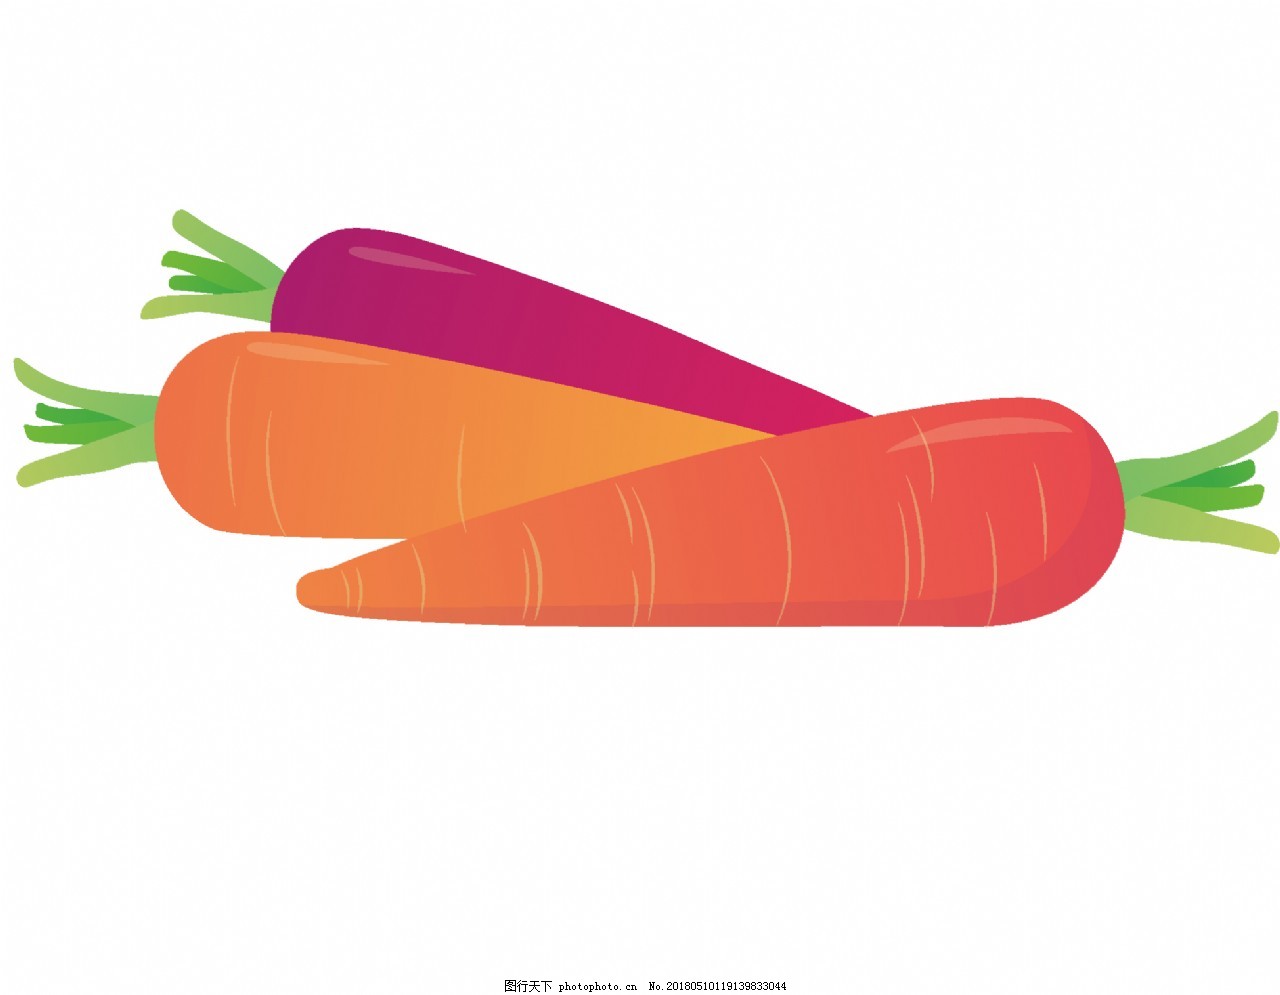 手繪卡通胡蘿蔔蔬菜手繪, 葫蘿蔔, 卡通蔬菜, 插畫用圖素材圖案，PSD和PNG圖片免費下載